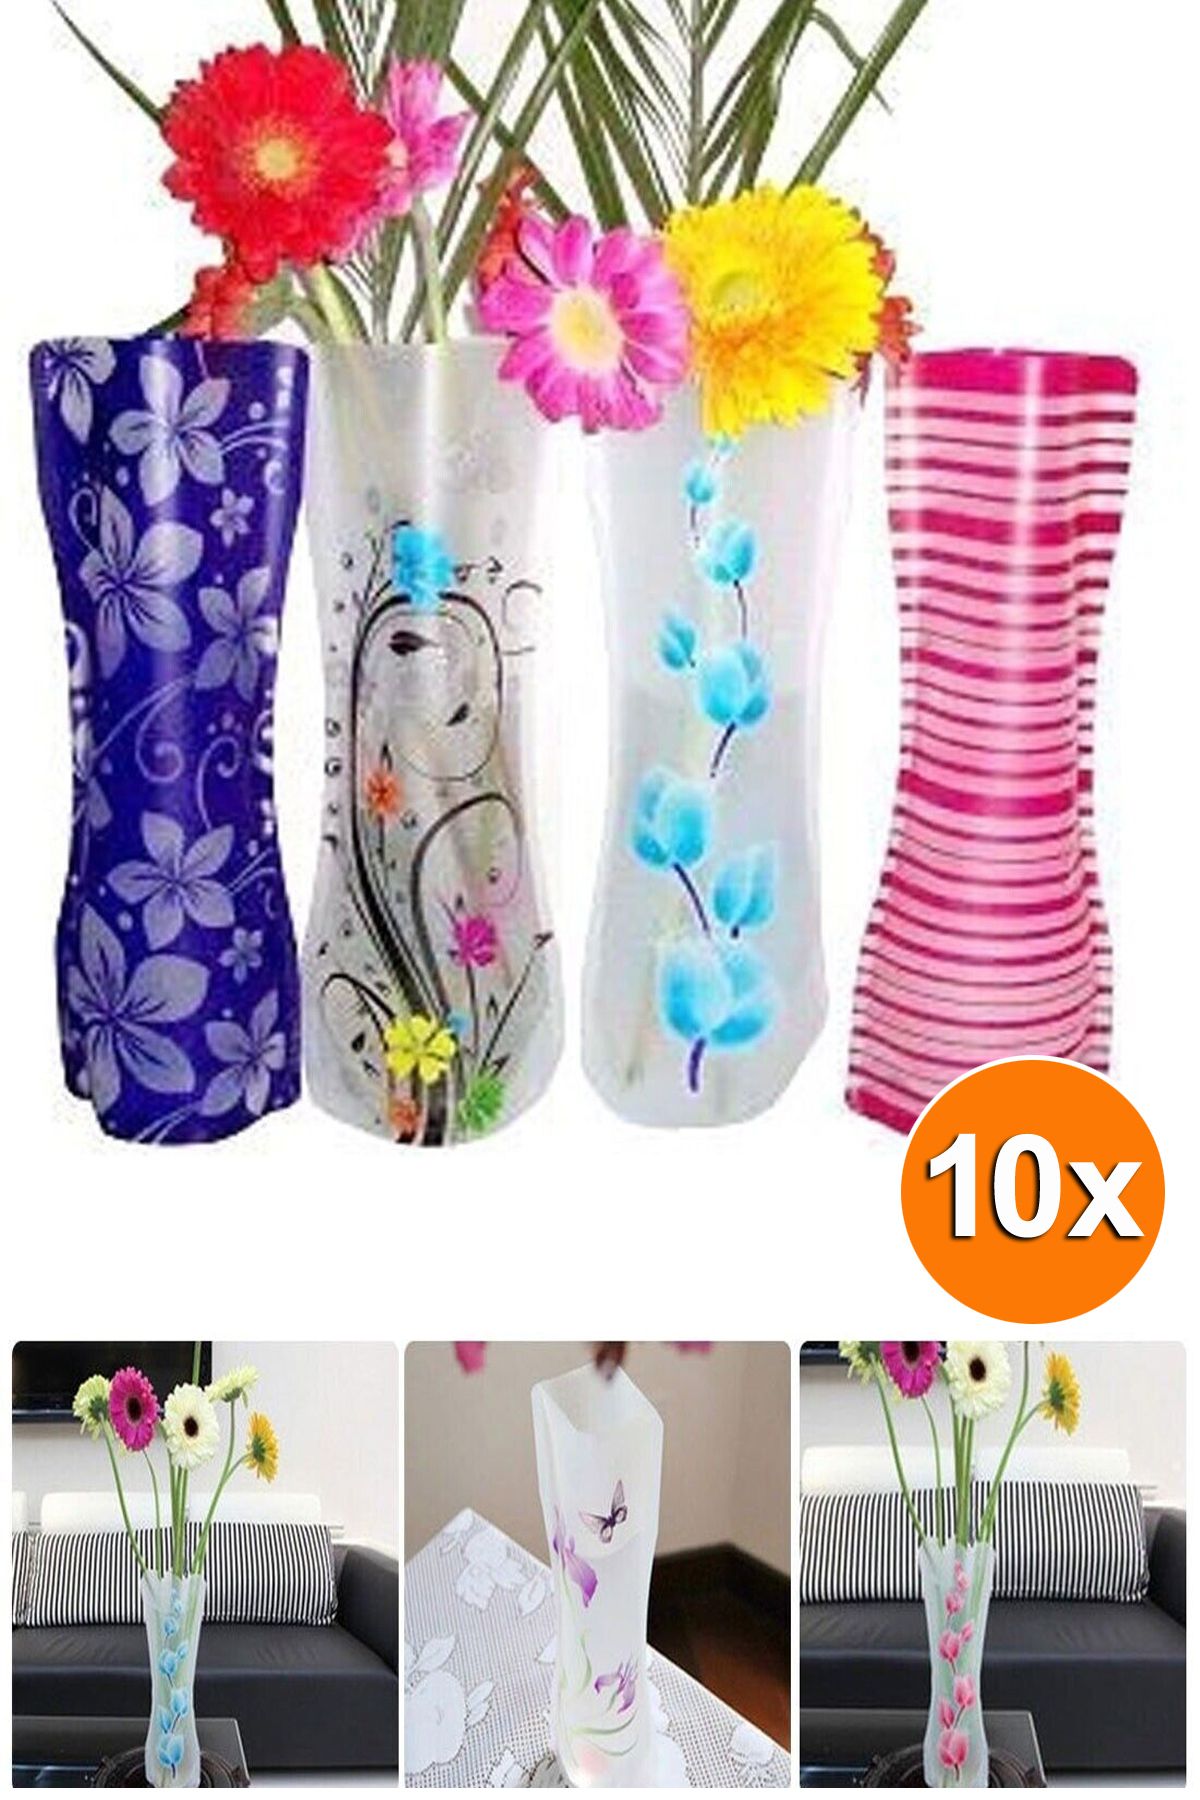 Bundeba 10 Adet Dekoratif Katlanabilir Plastik Vazo Çiçeklik Şeffaf Pvc Katlanır Kırılmaz Vazo Saksı Stand